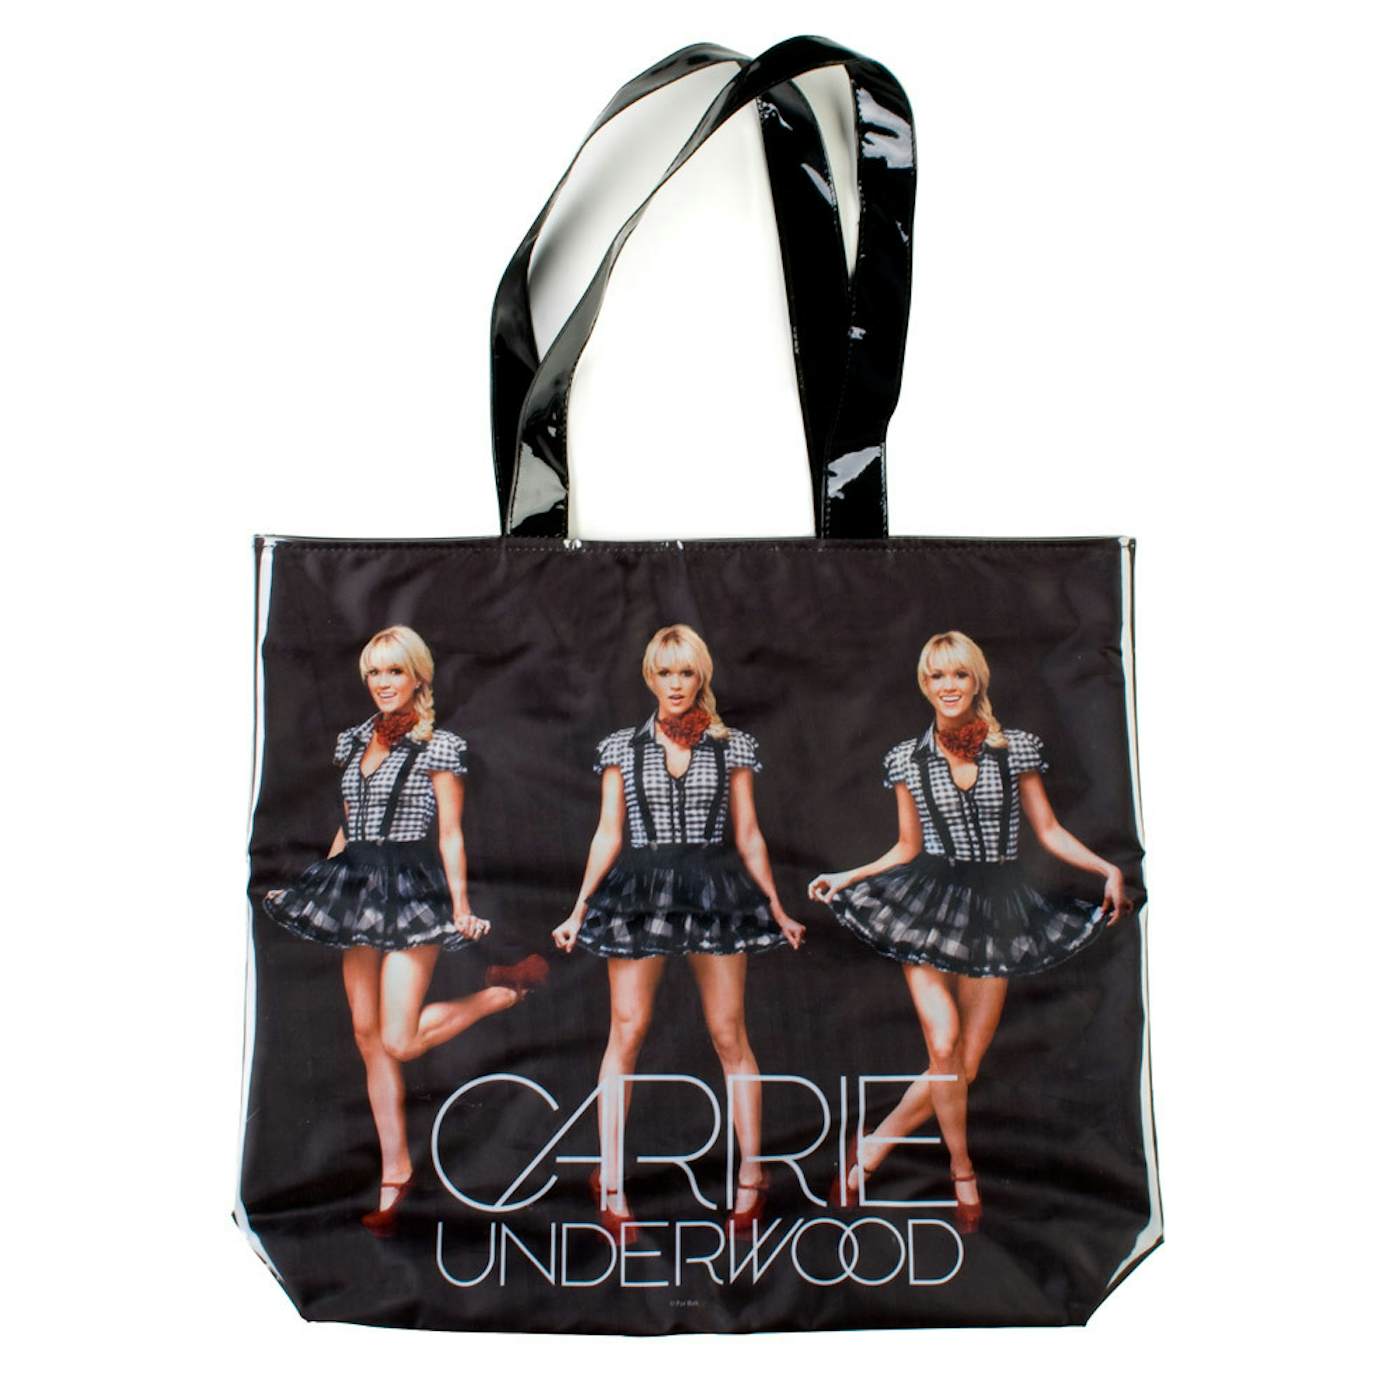 Carrie Underwood Tote Bag